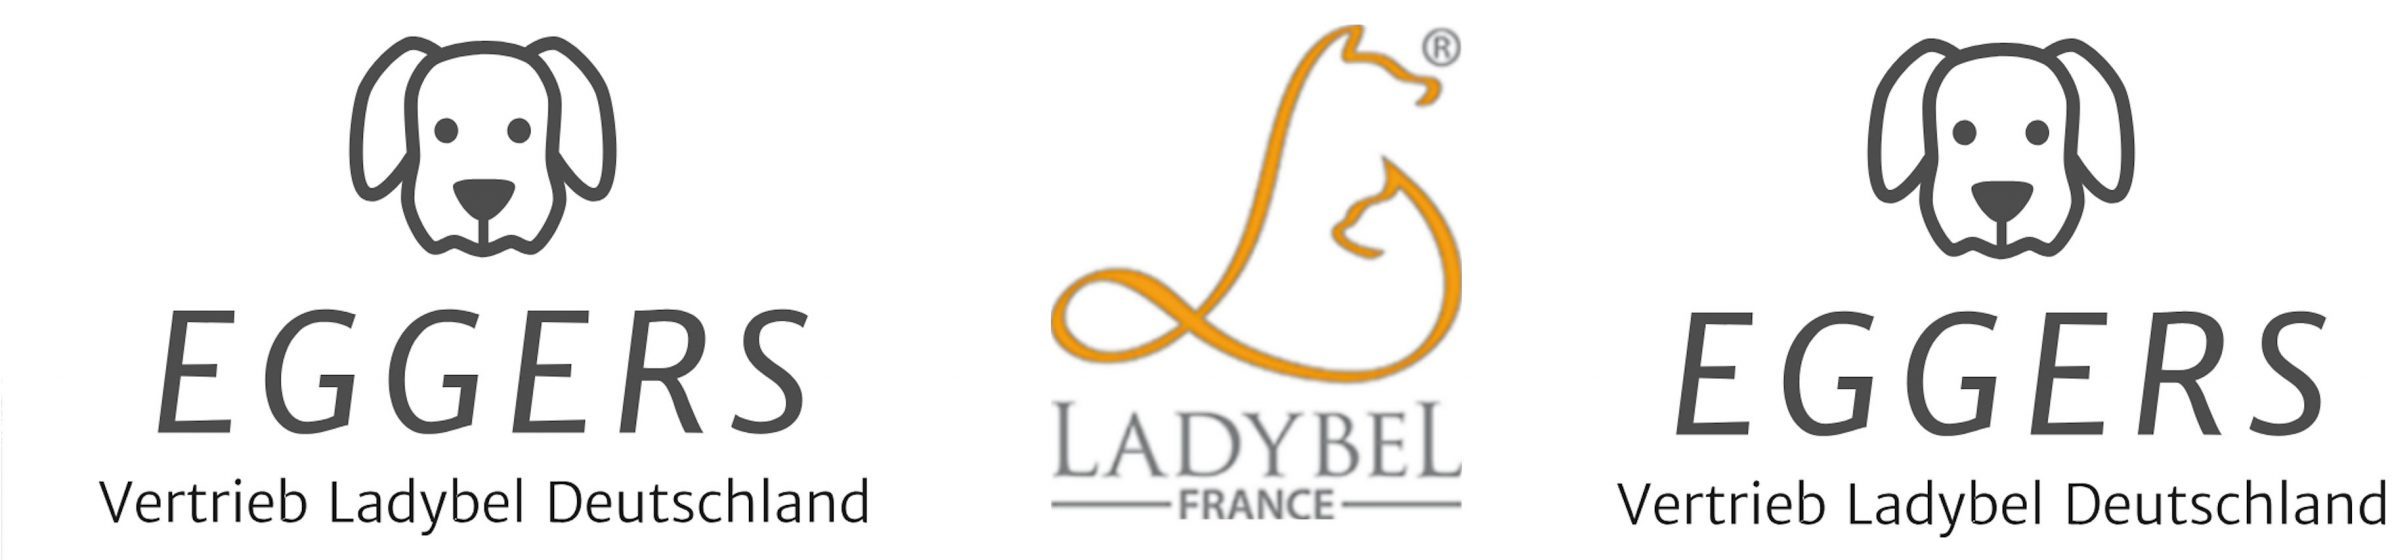 Ladybel Deutschland